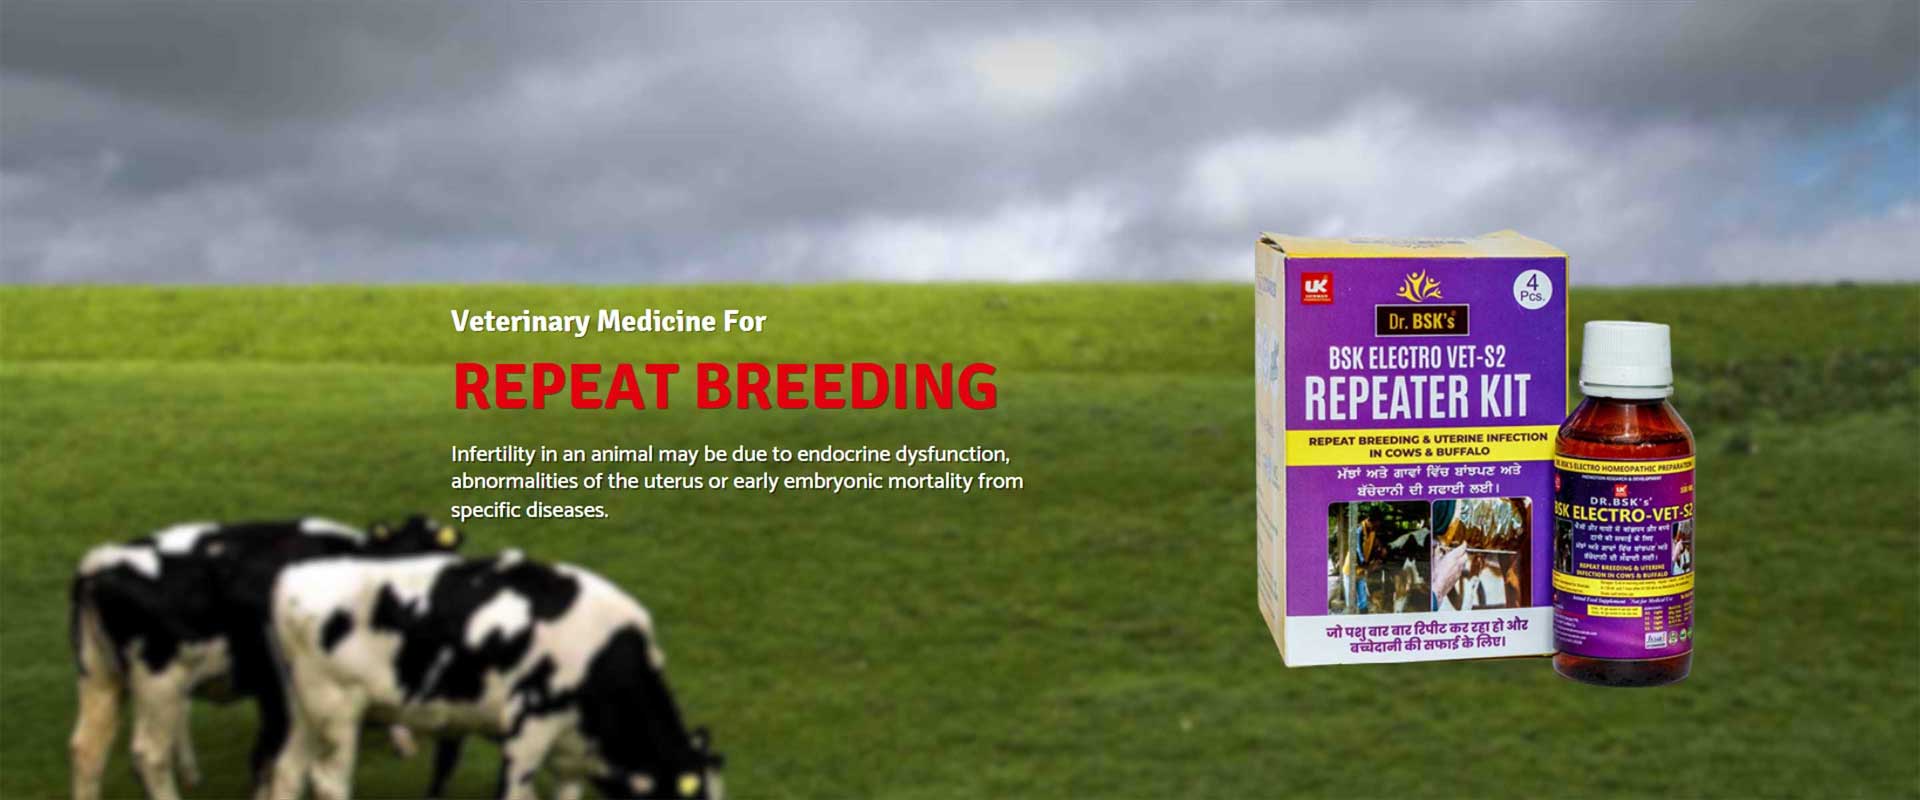 Veterinary Medicine For Repeat Breeding